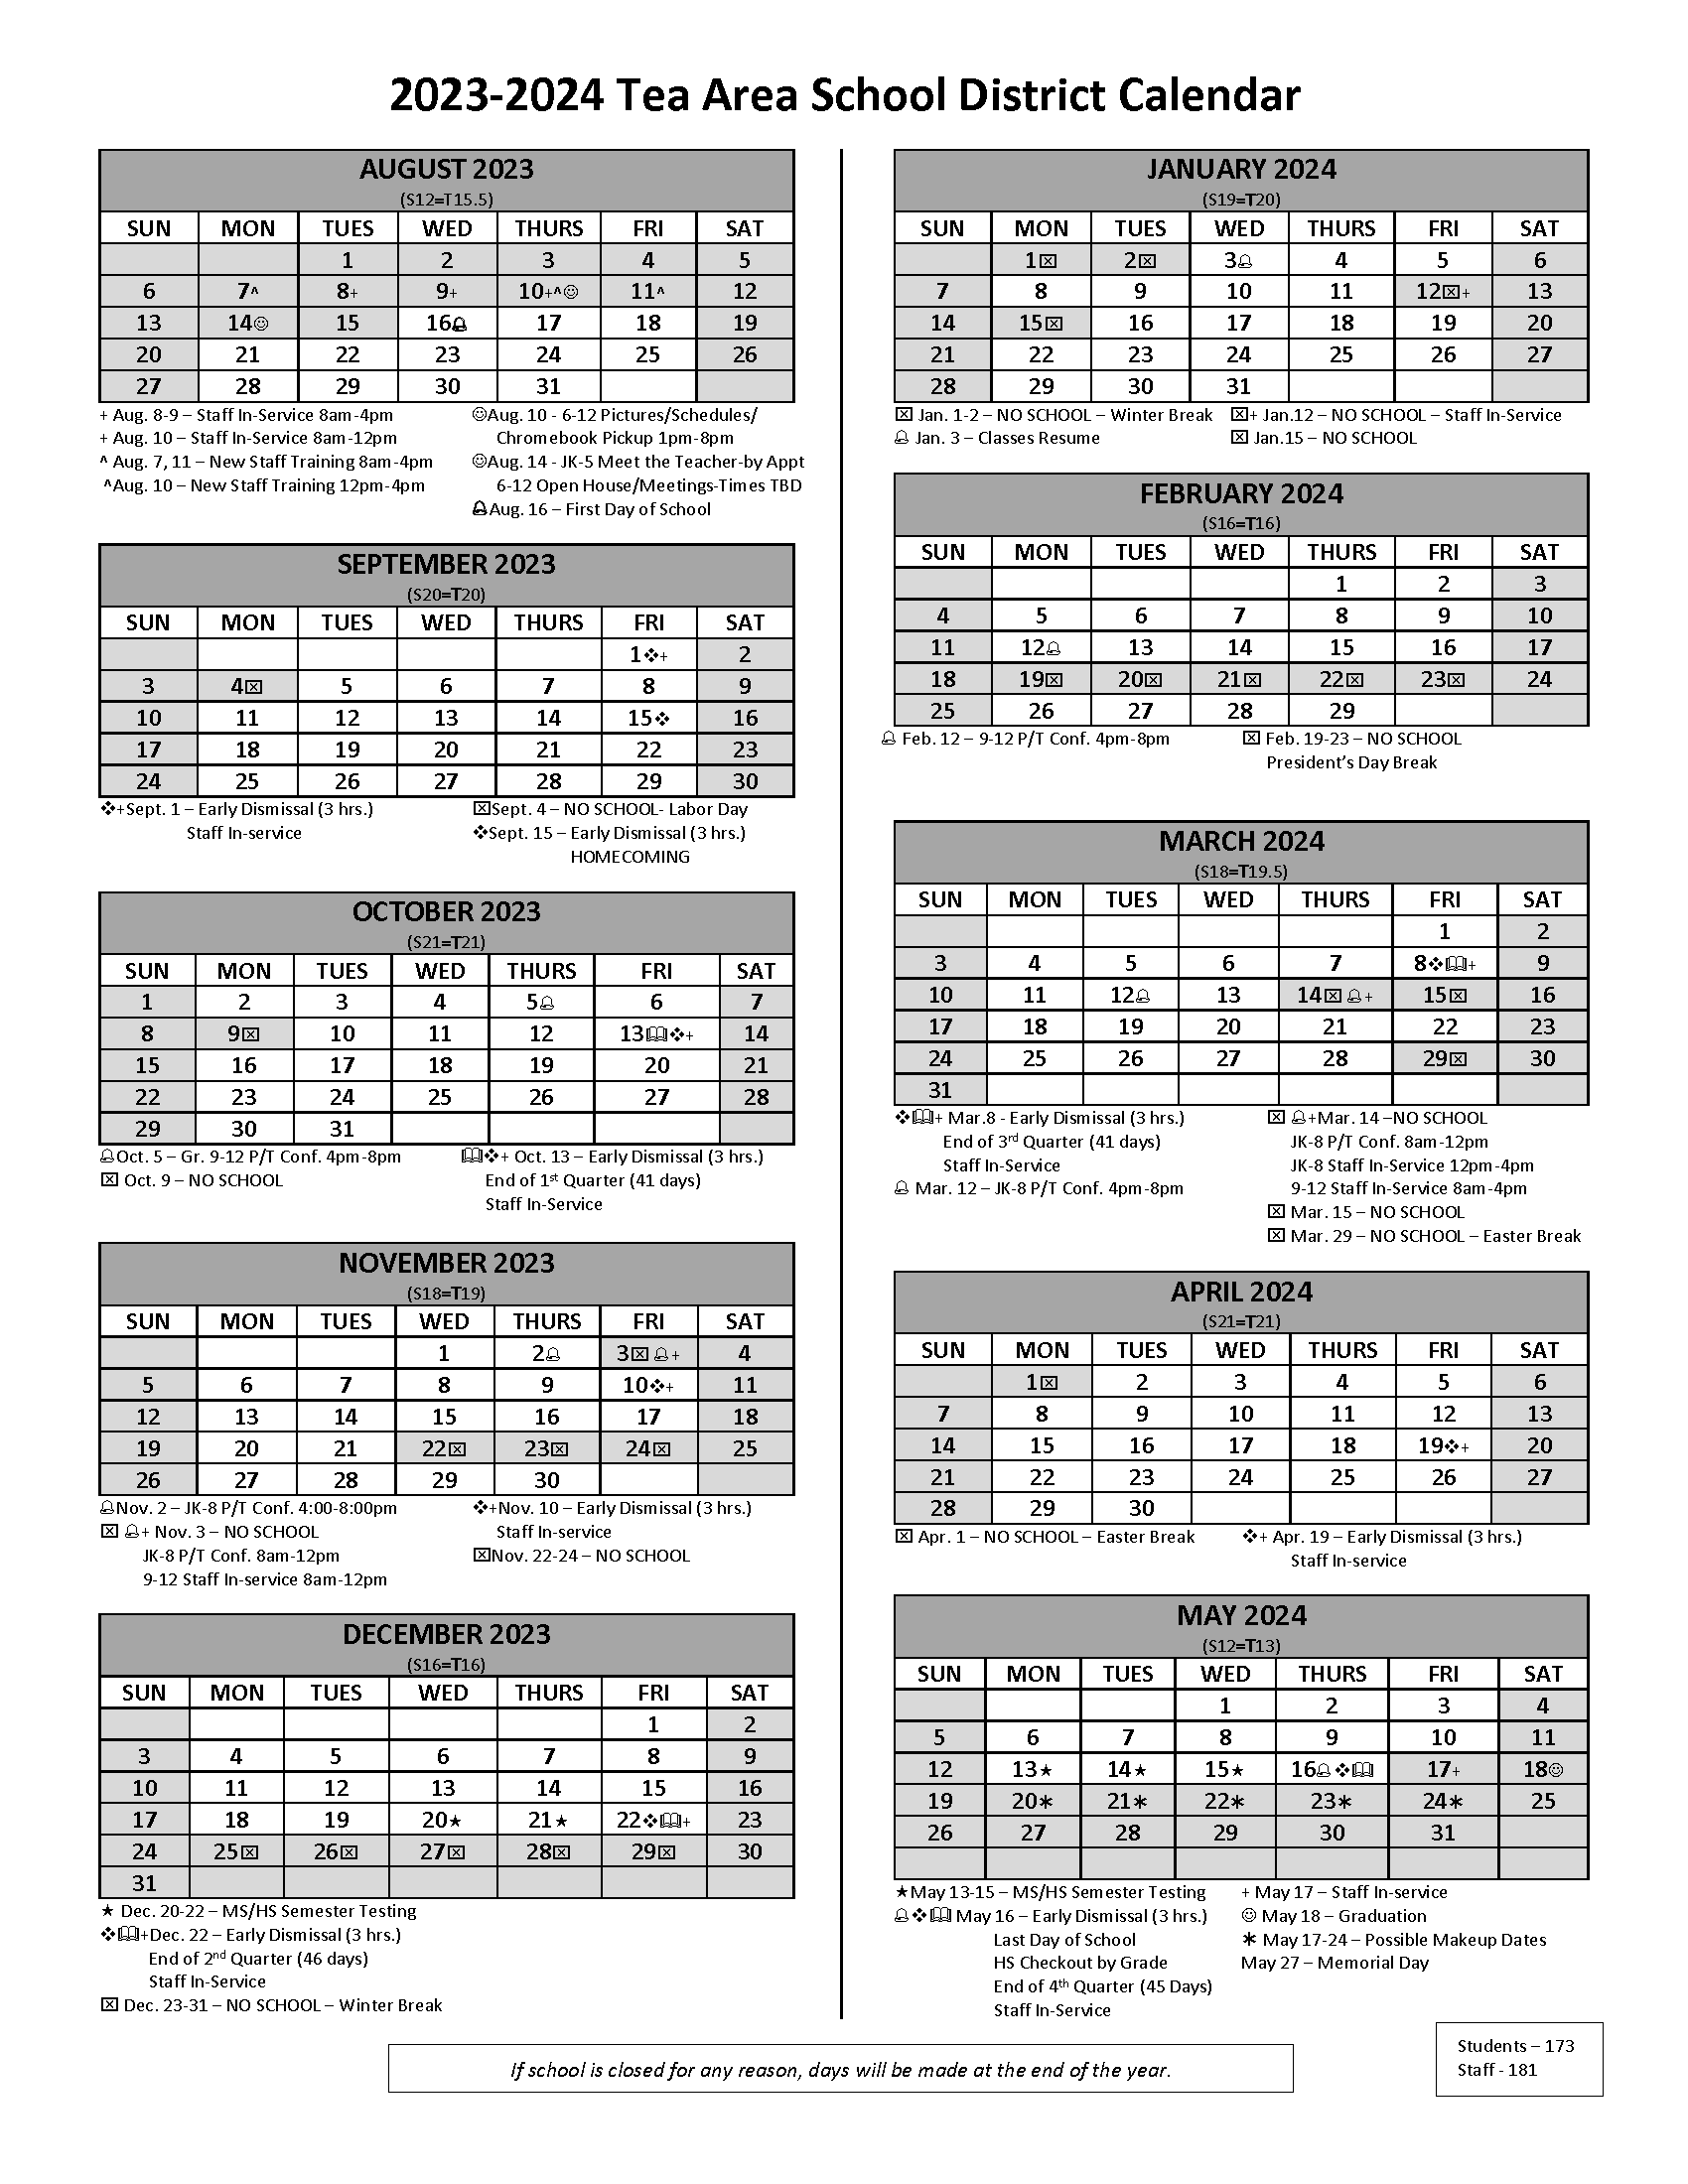 District Calendars Tea Area School District